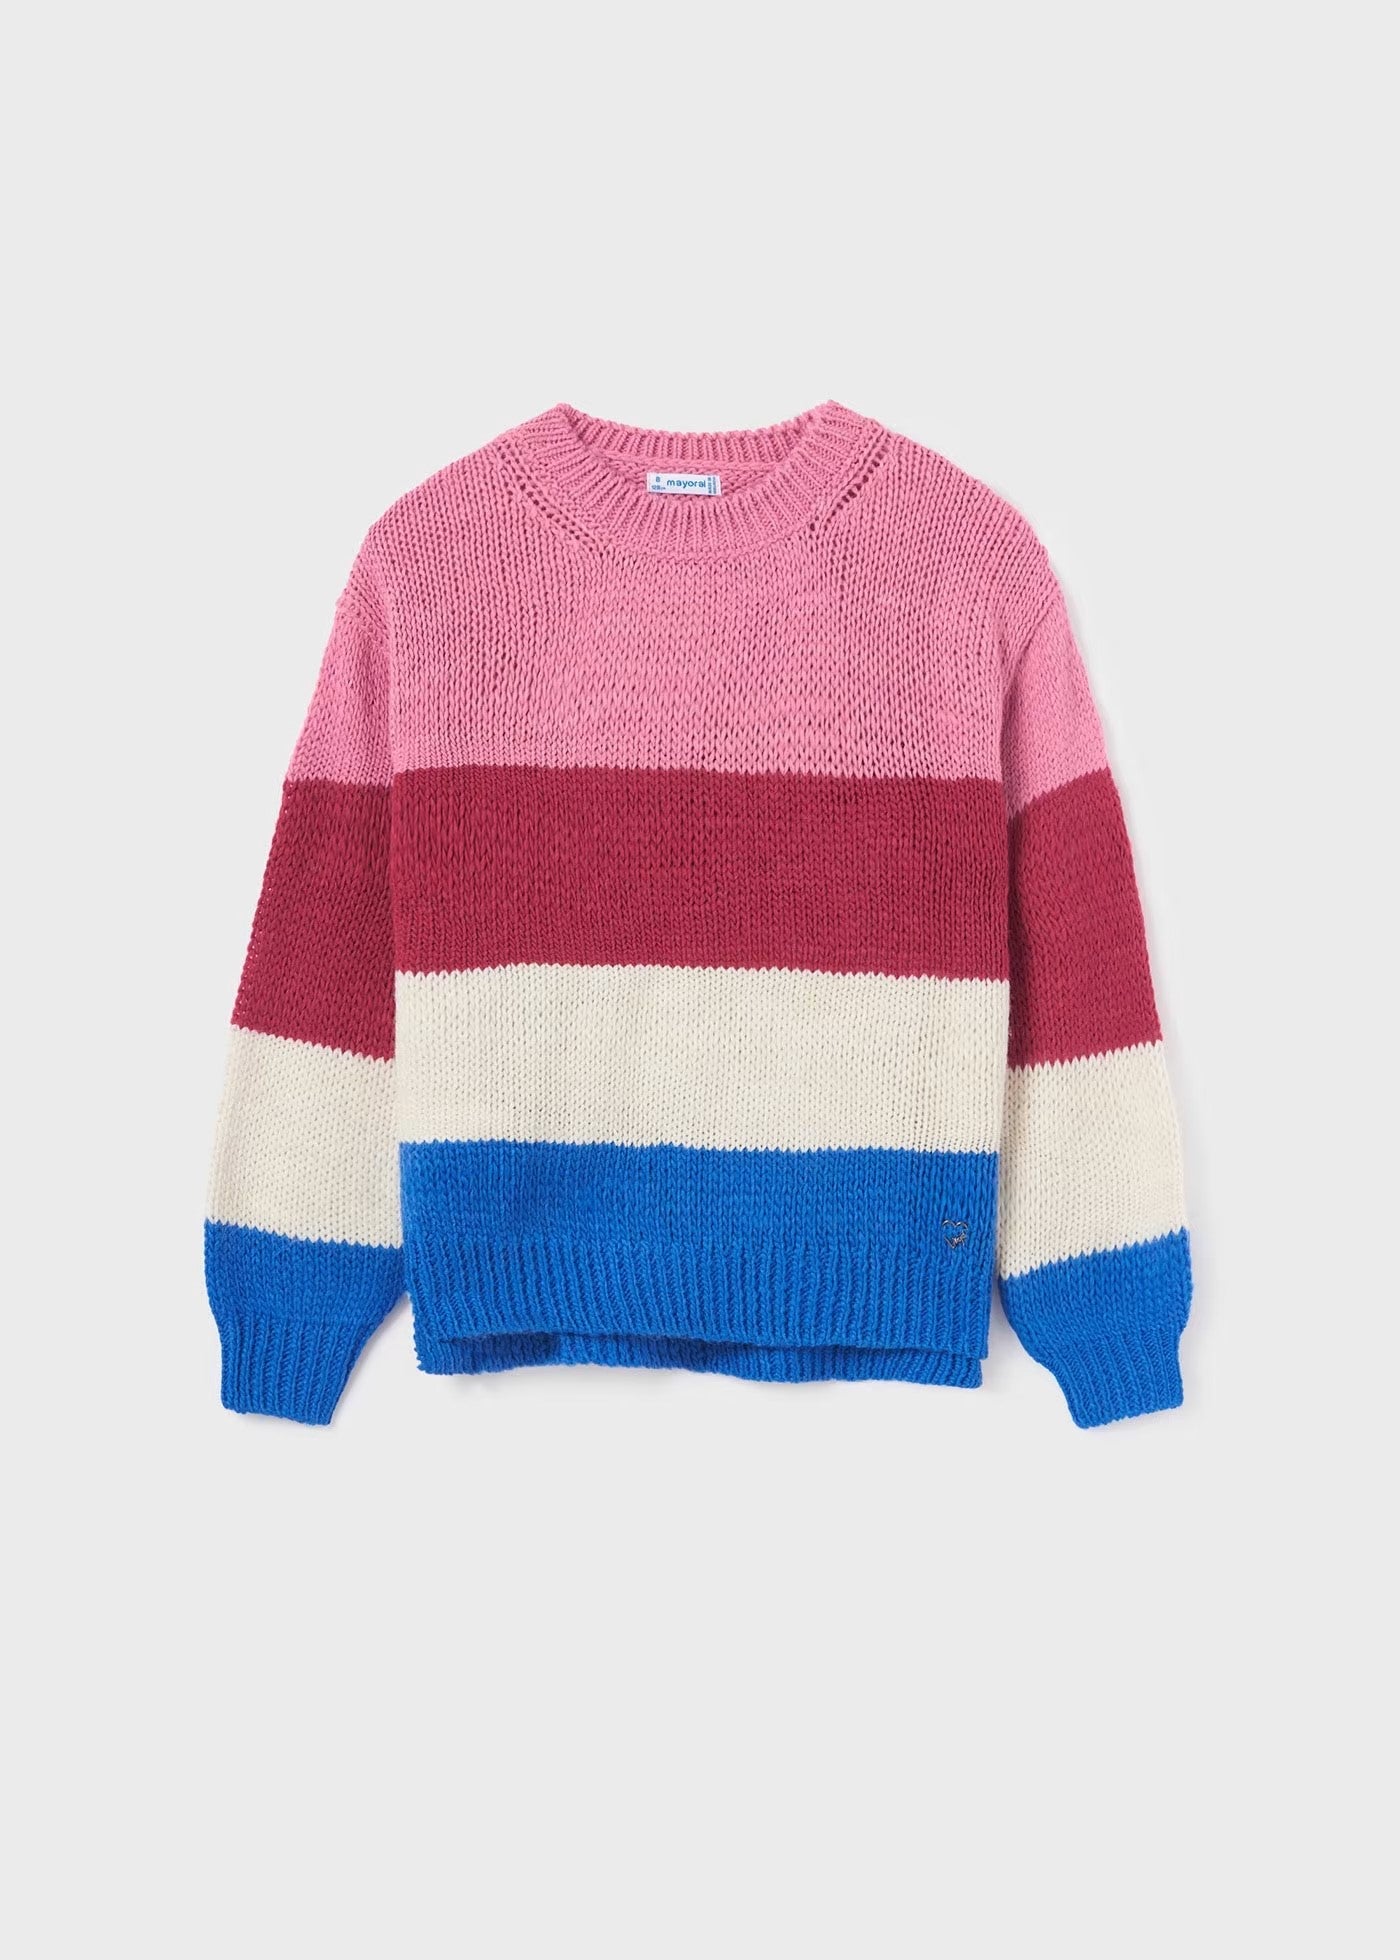 7310 - Tween Colorblock Sweater - Berry